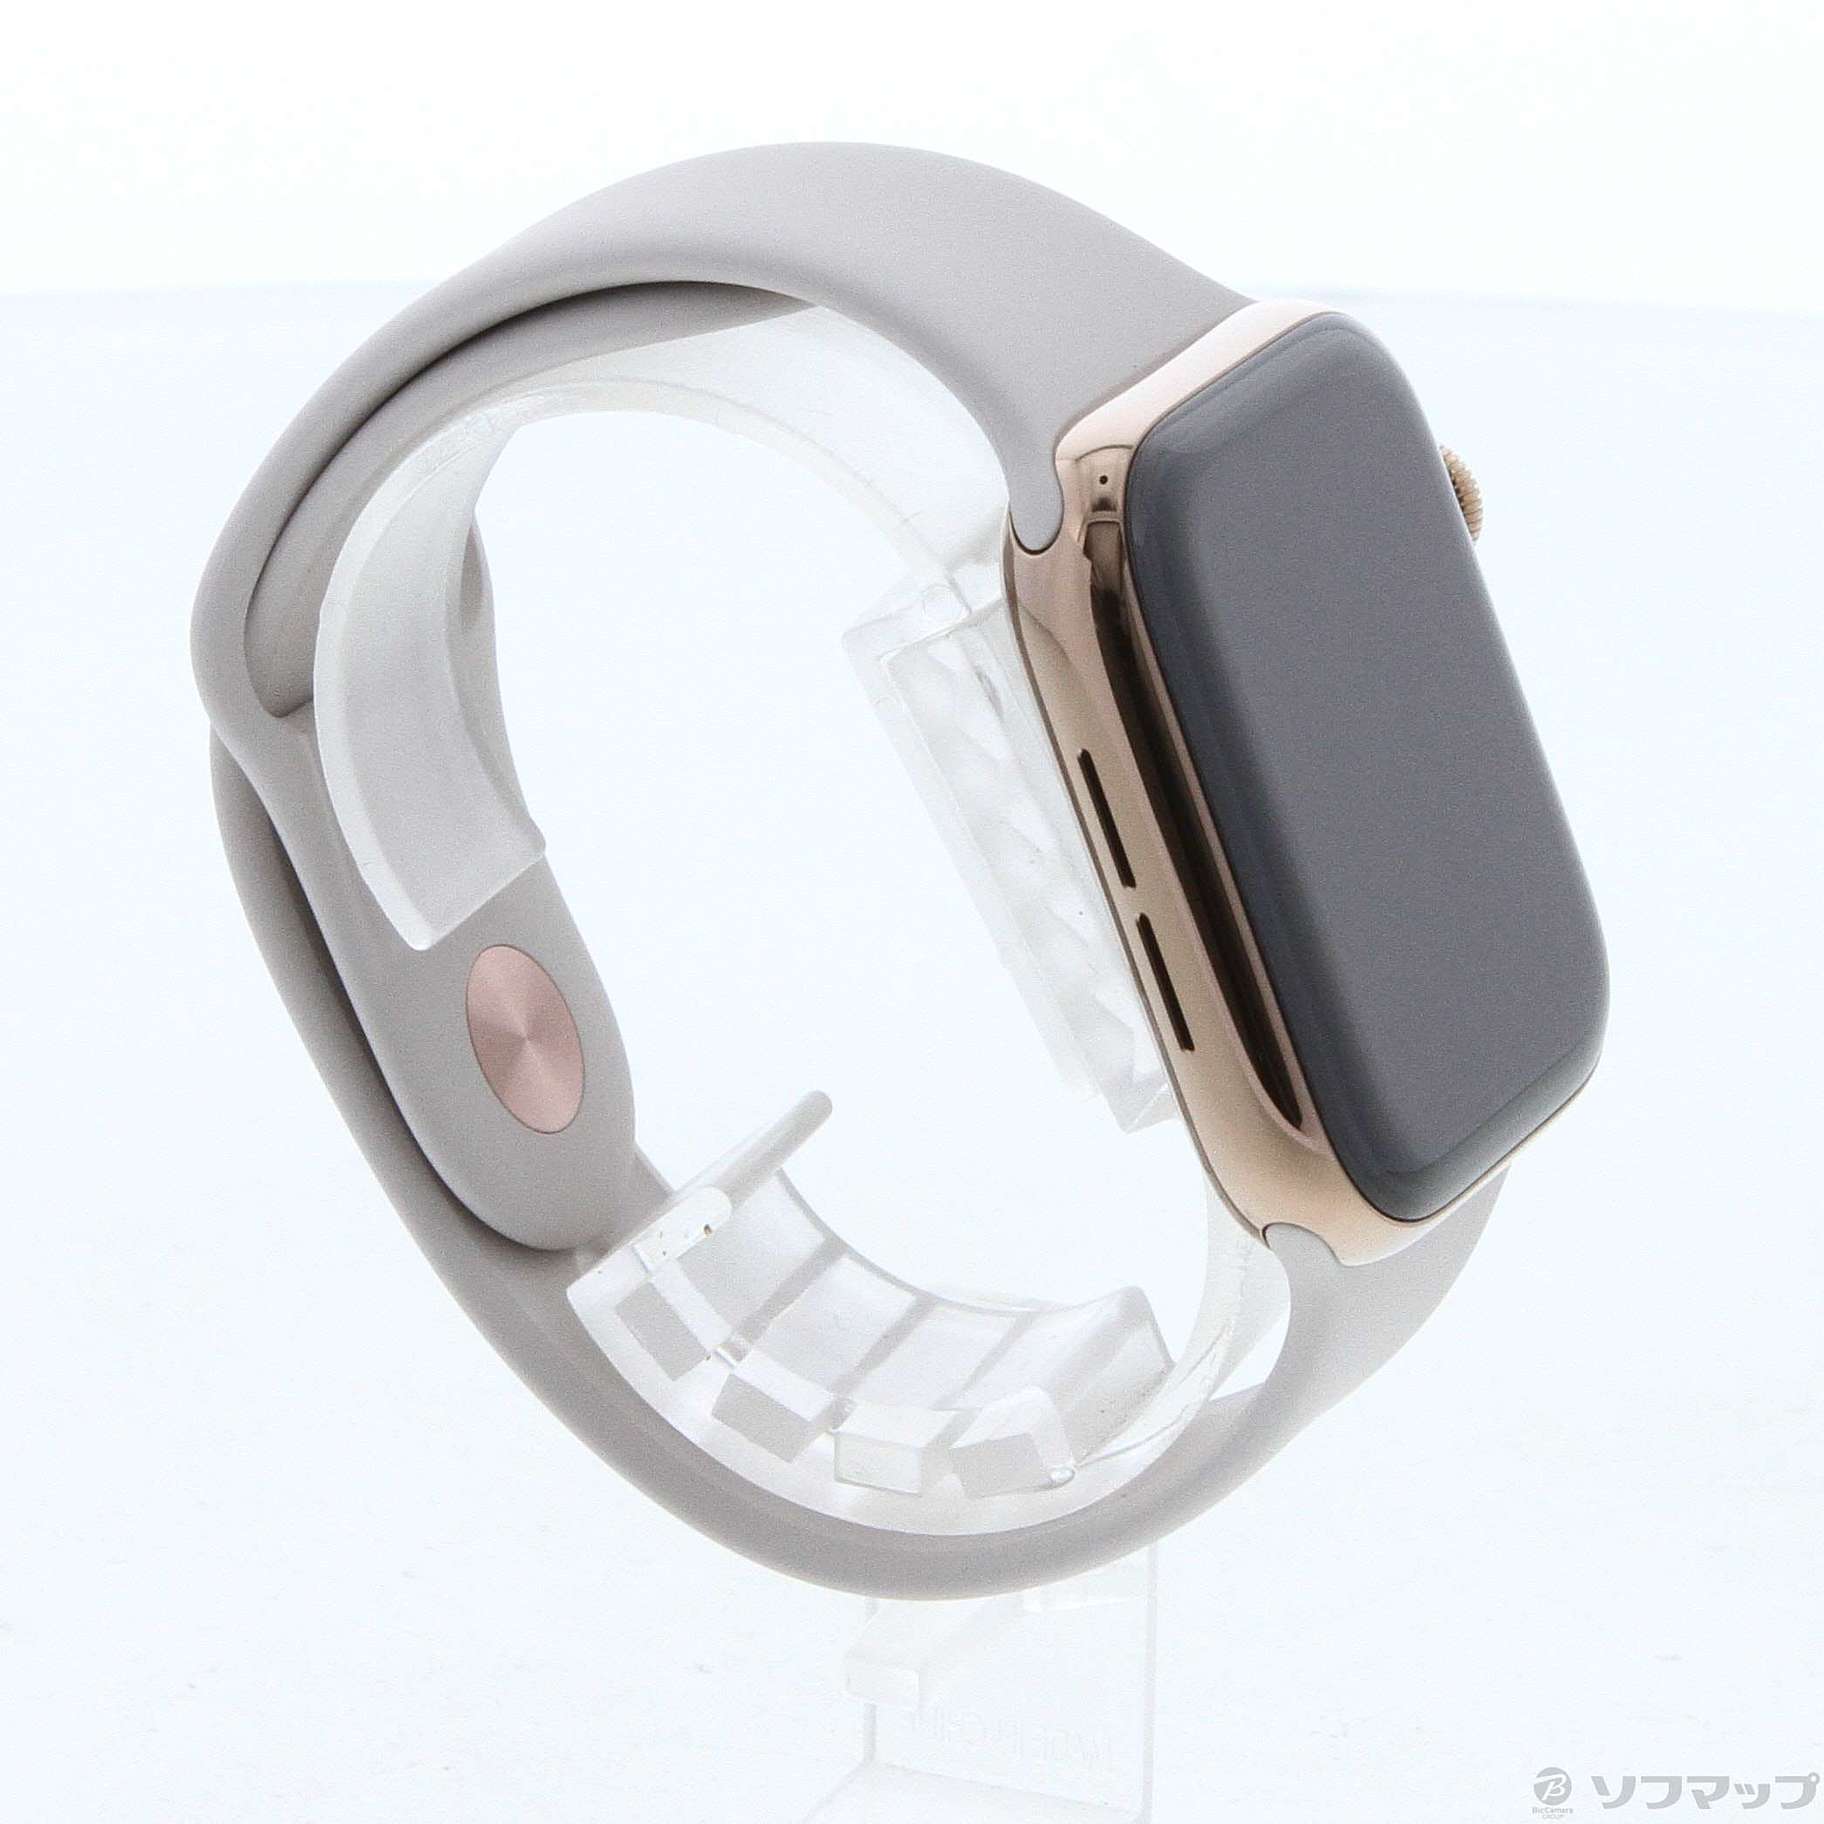 激安正規 アップル Apple Watch5 44mm ゴールドステンレス ストーン